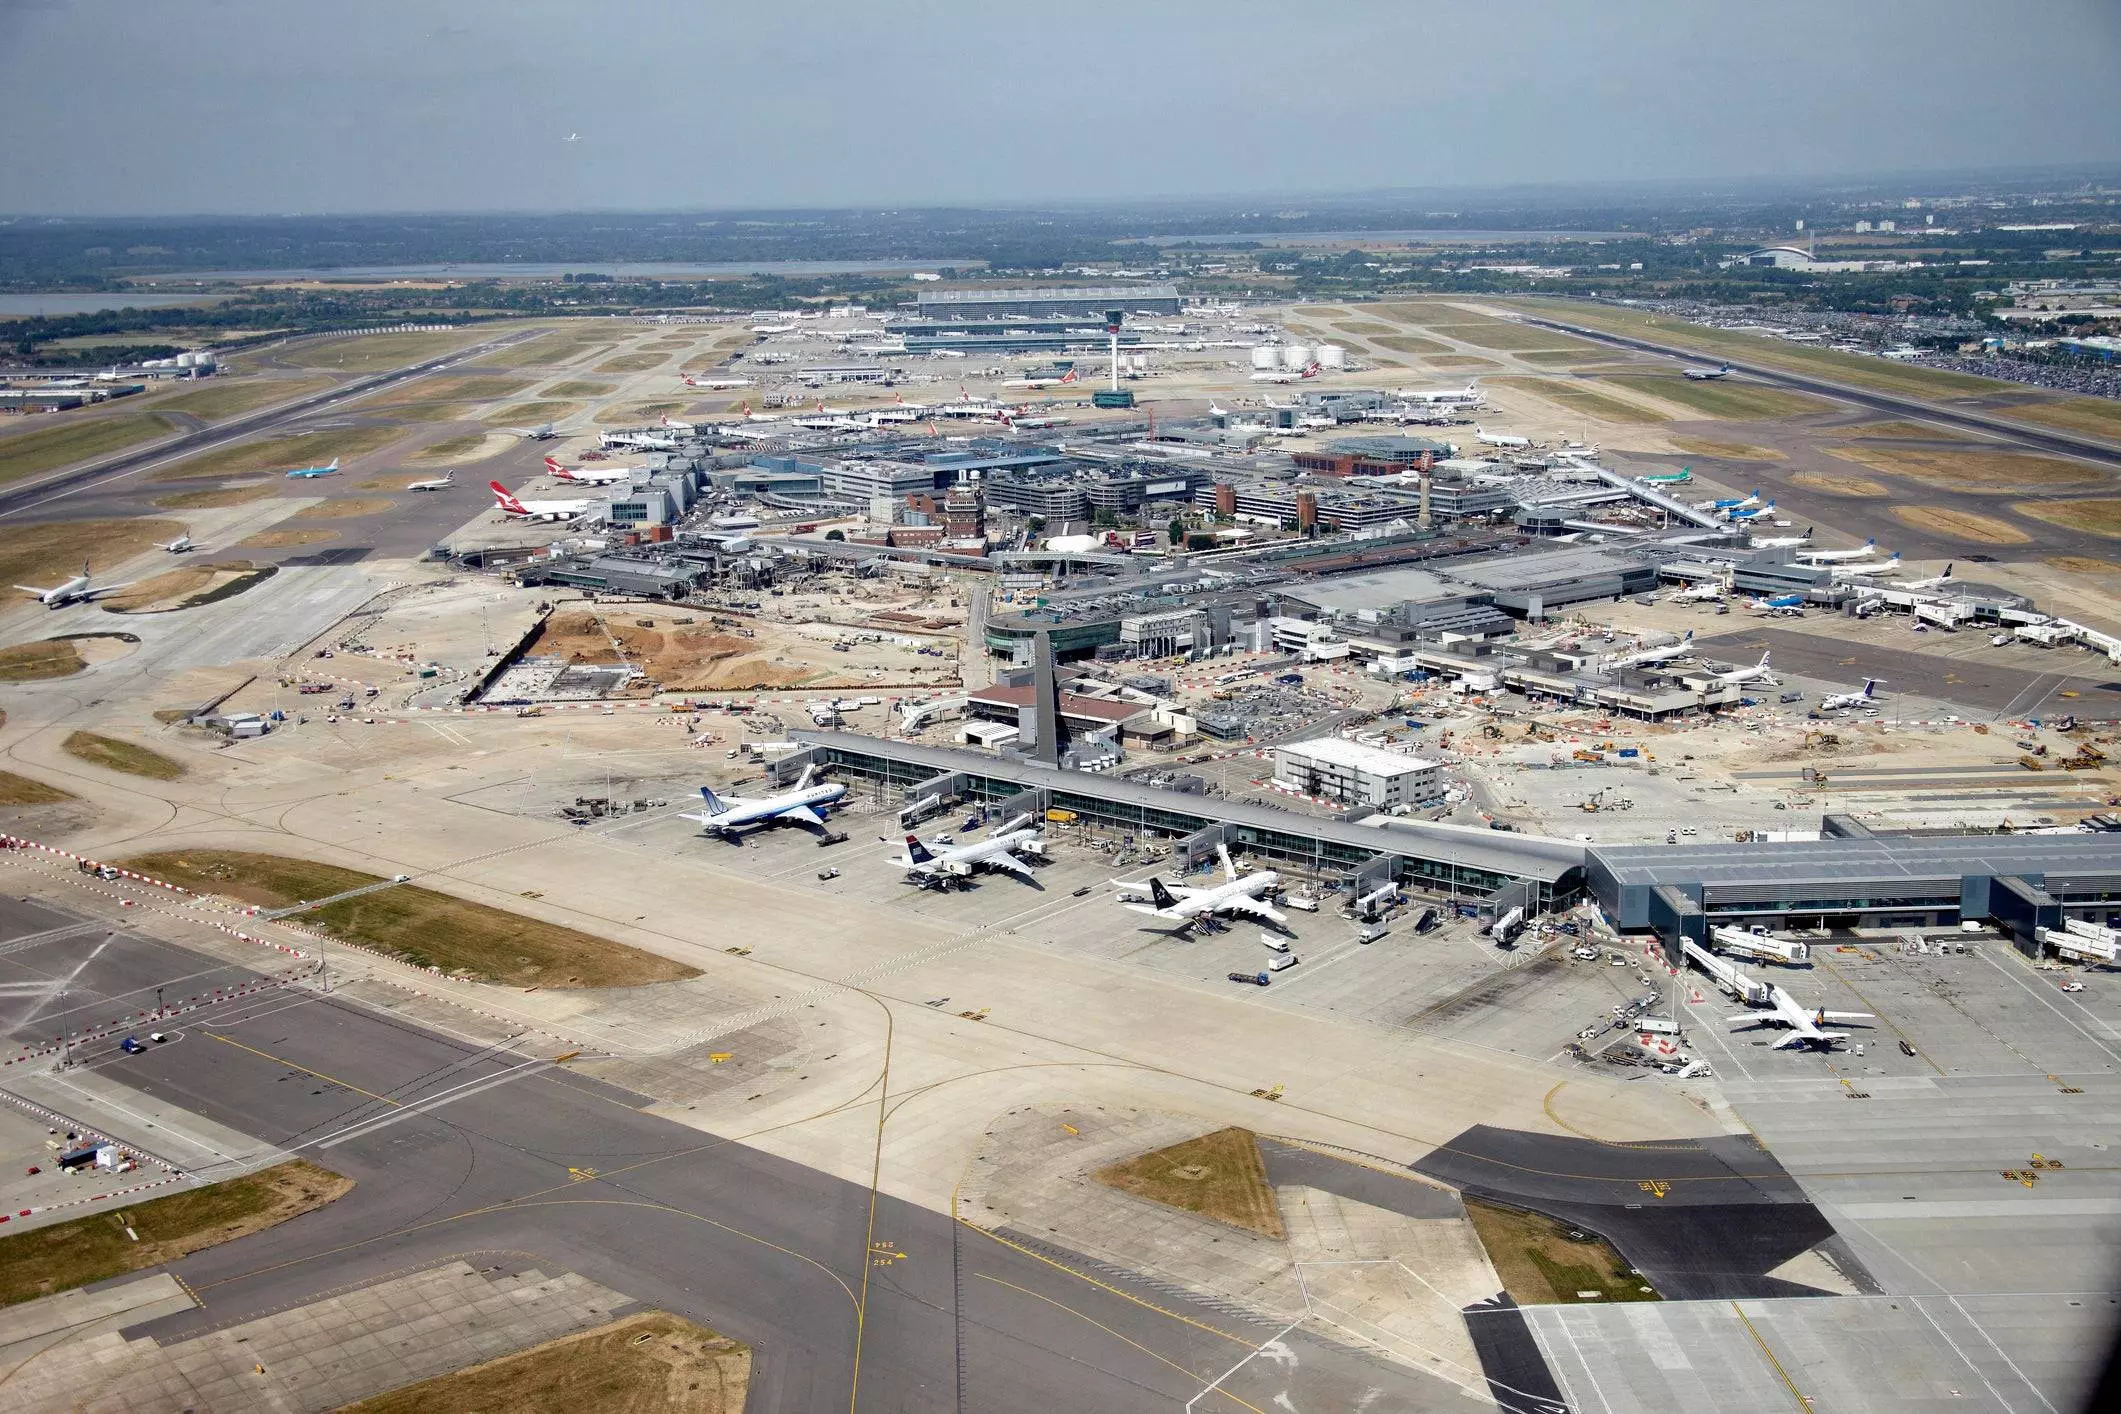 10 самых загруженных аэропортов мира